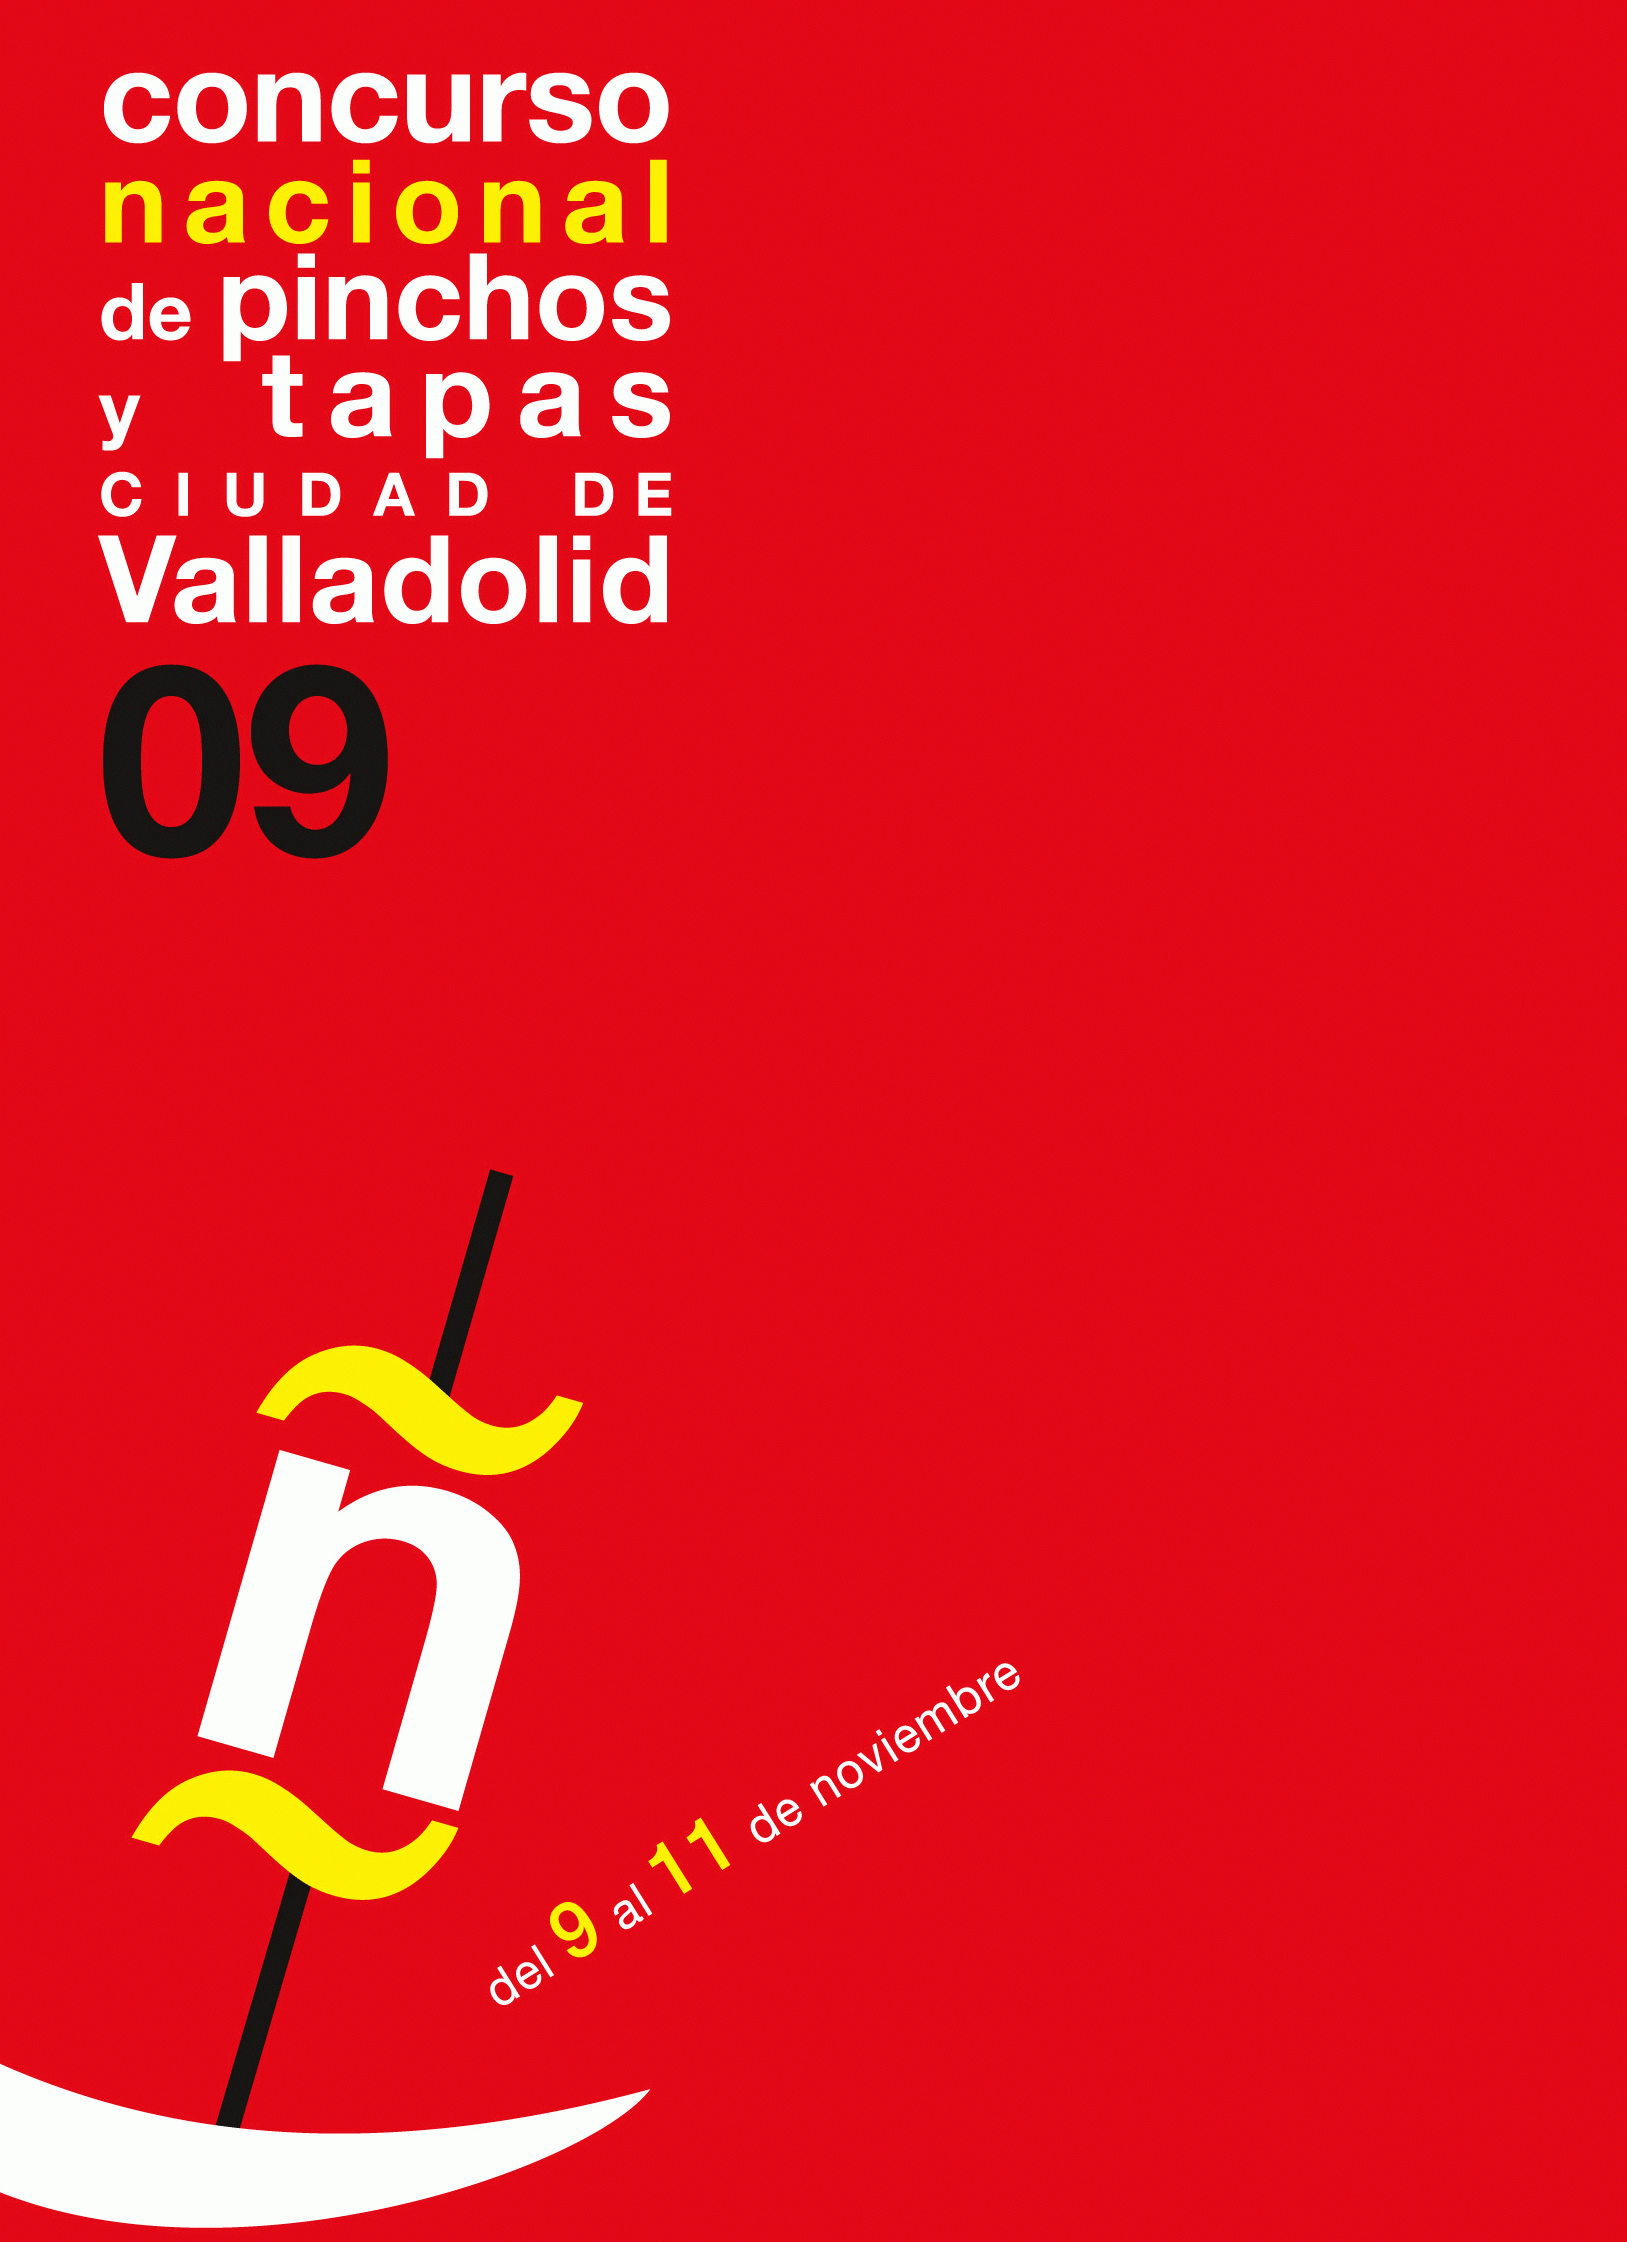 V Concurso Nacional de Pinchos y Tapas "Ciudad de Valladolid"